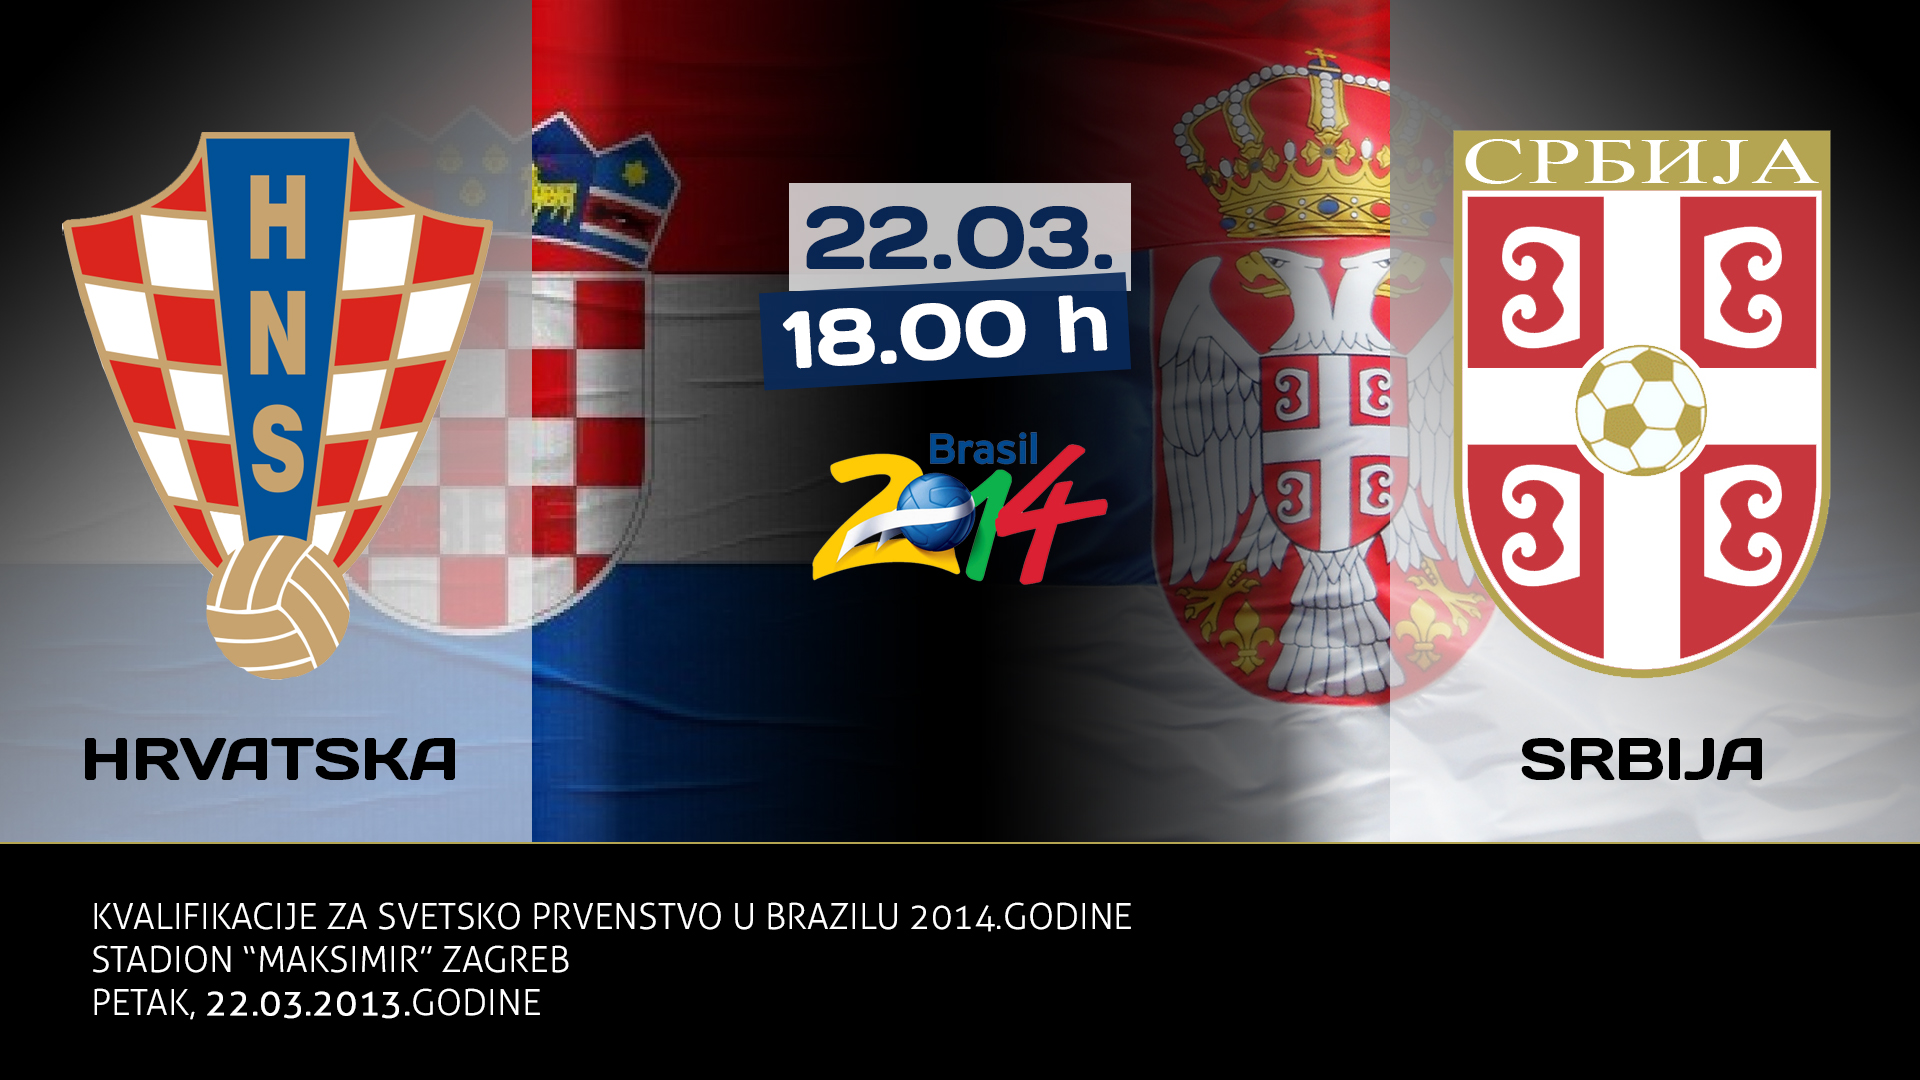 170989_48608369_kvalifikacije-svetsko-prvenstvo-2014-brazil-zagreb-hrvatska-srbija-22-3-2013.jpg